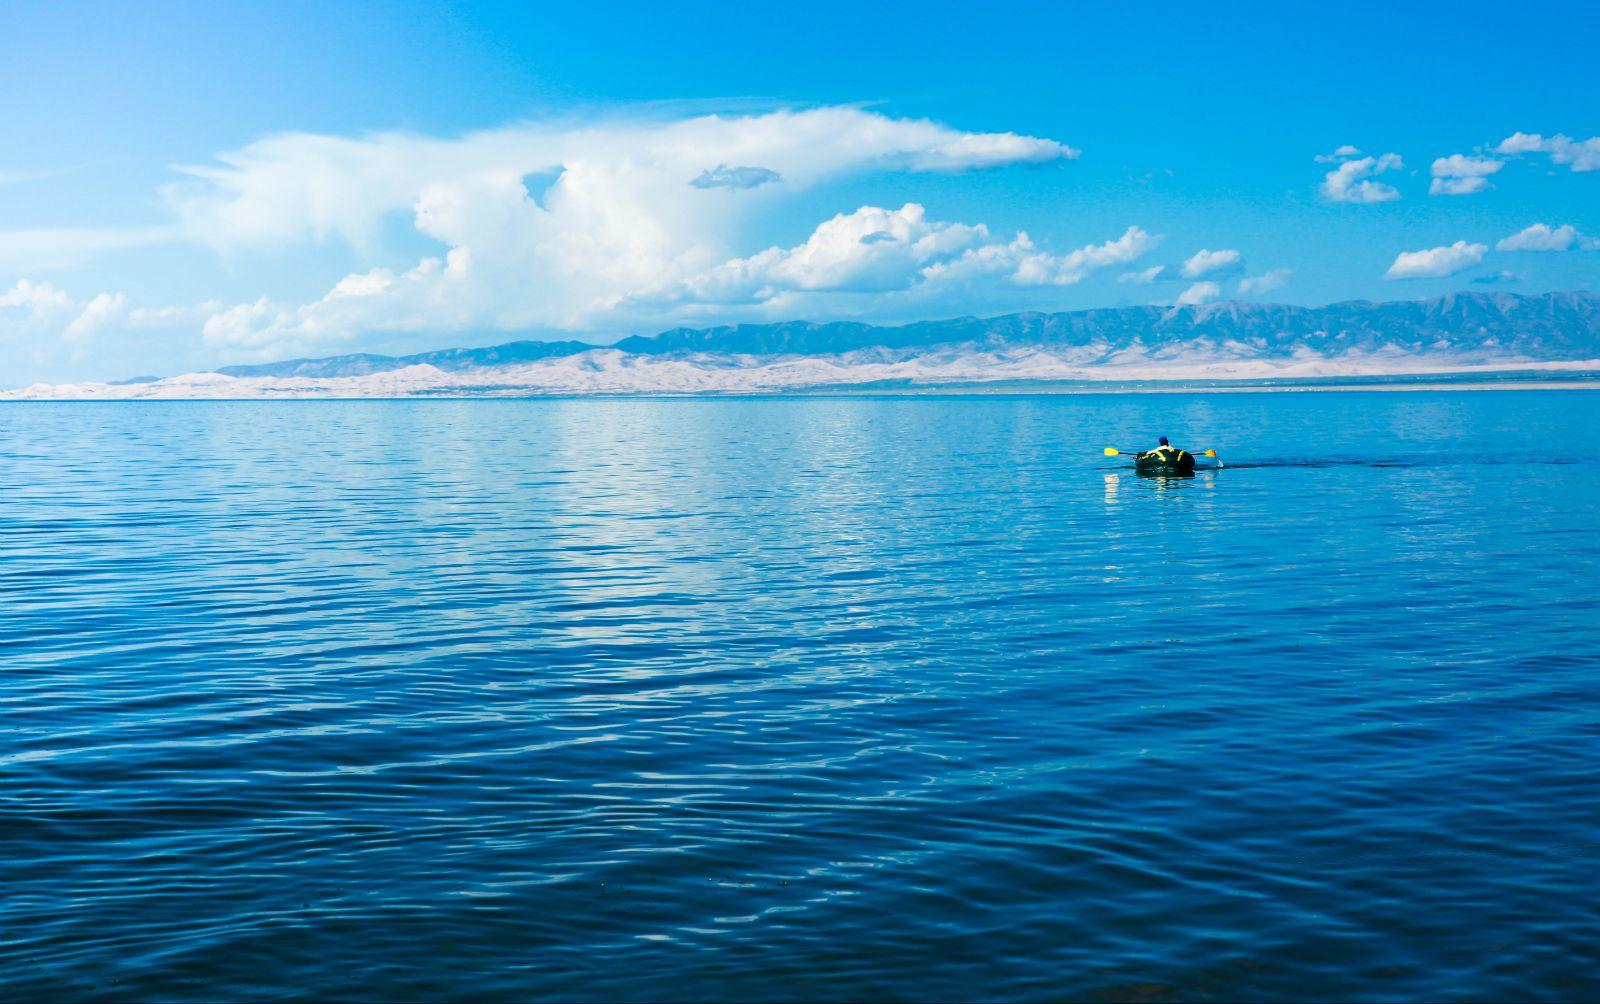 青海湖图片风景 壁纸图片